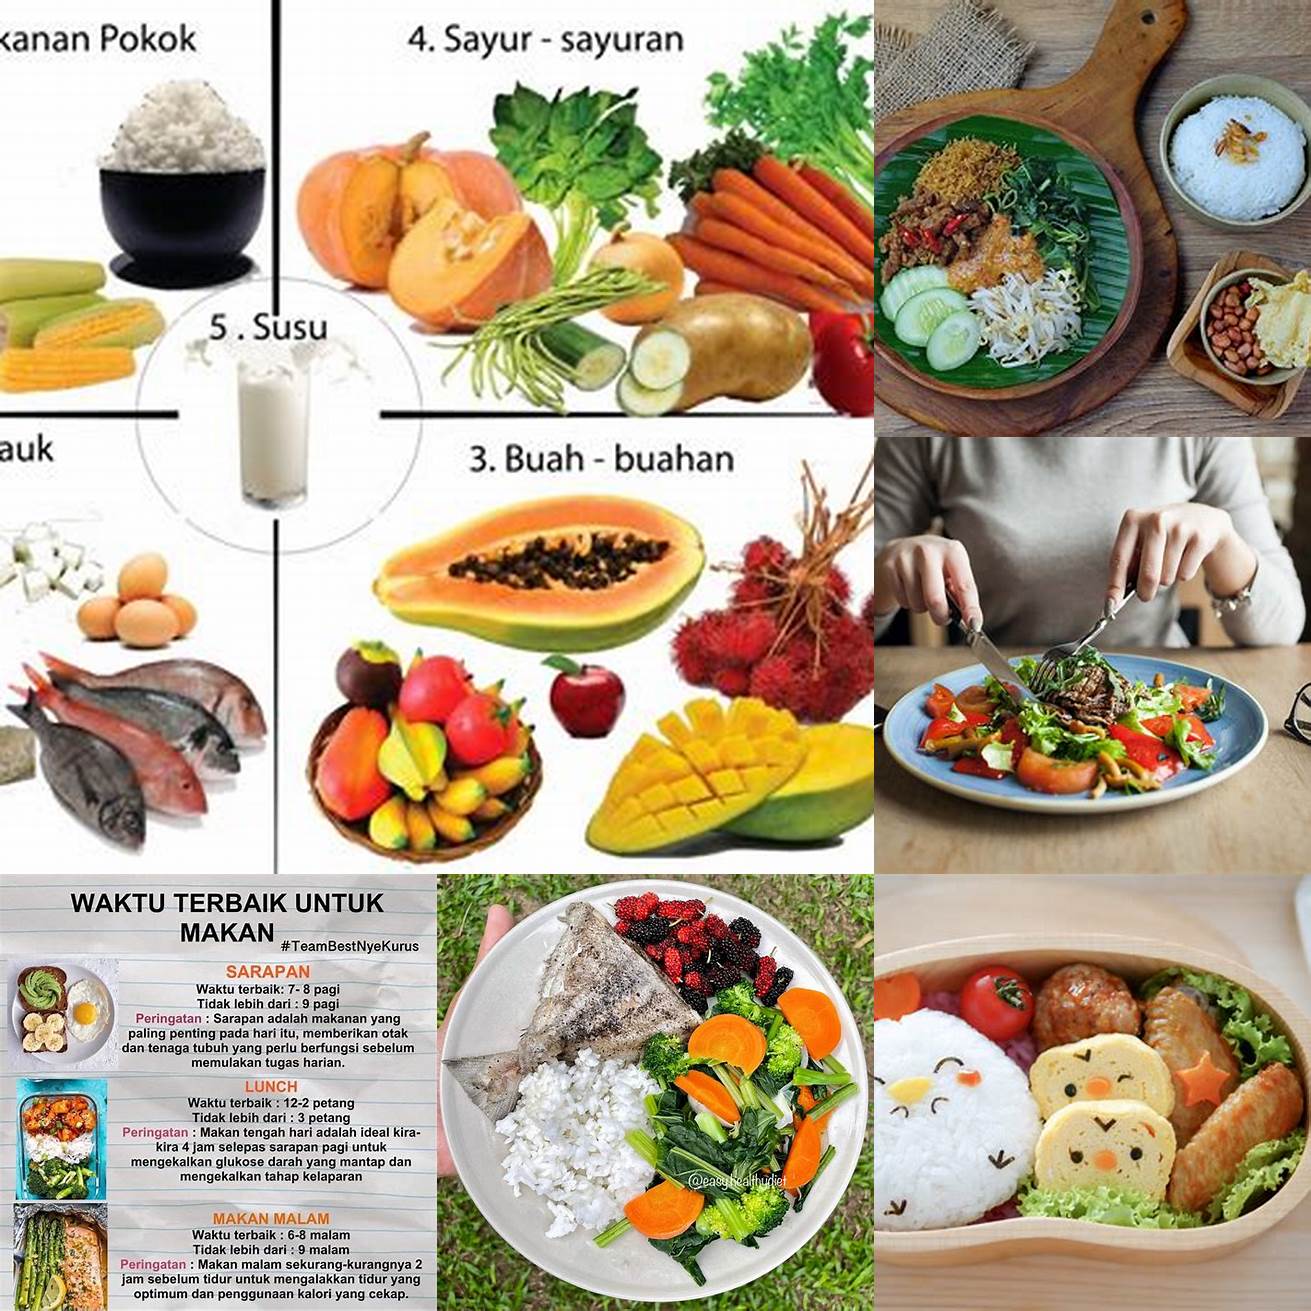 8 Makan Makanan yang Sehat